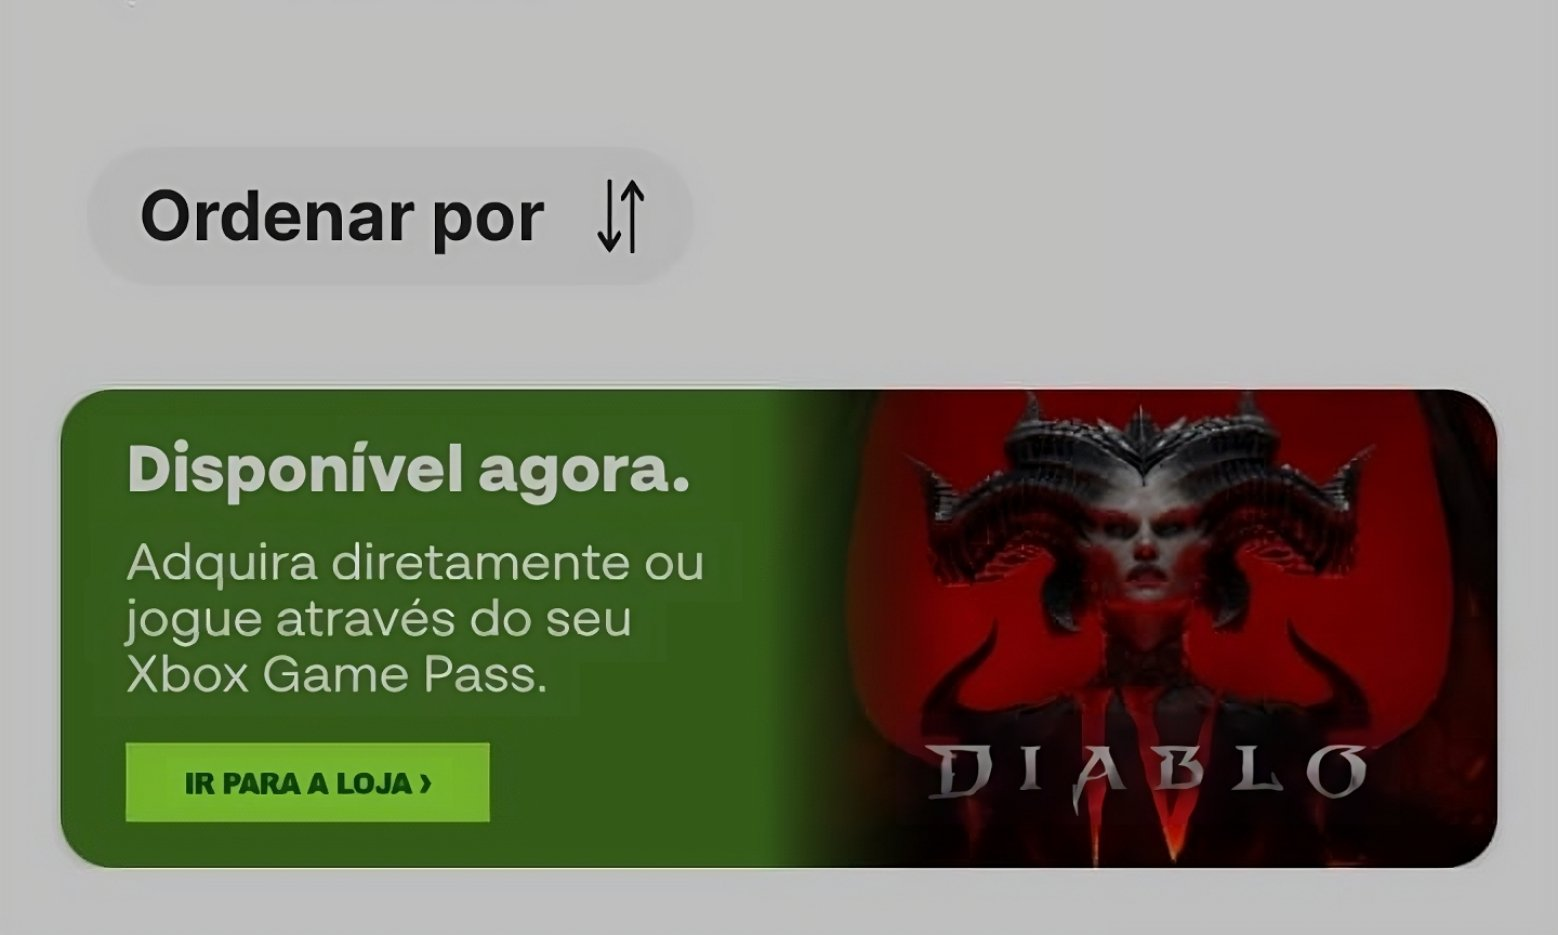 Diablo 4 + gamepass. Диабло баннер в Америке. Богоподобный гейм пасс. Диабло 4 волк. Diablo 4 game pass не устанавливается